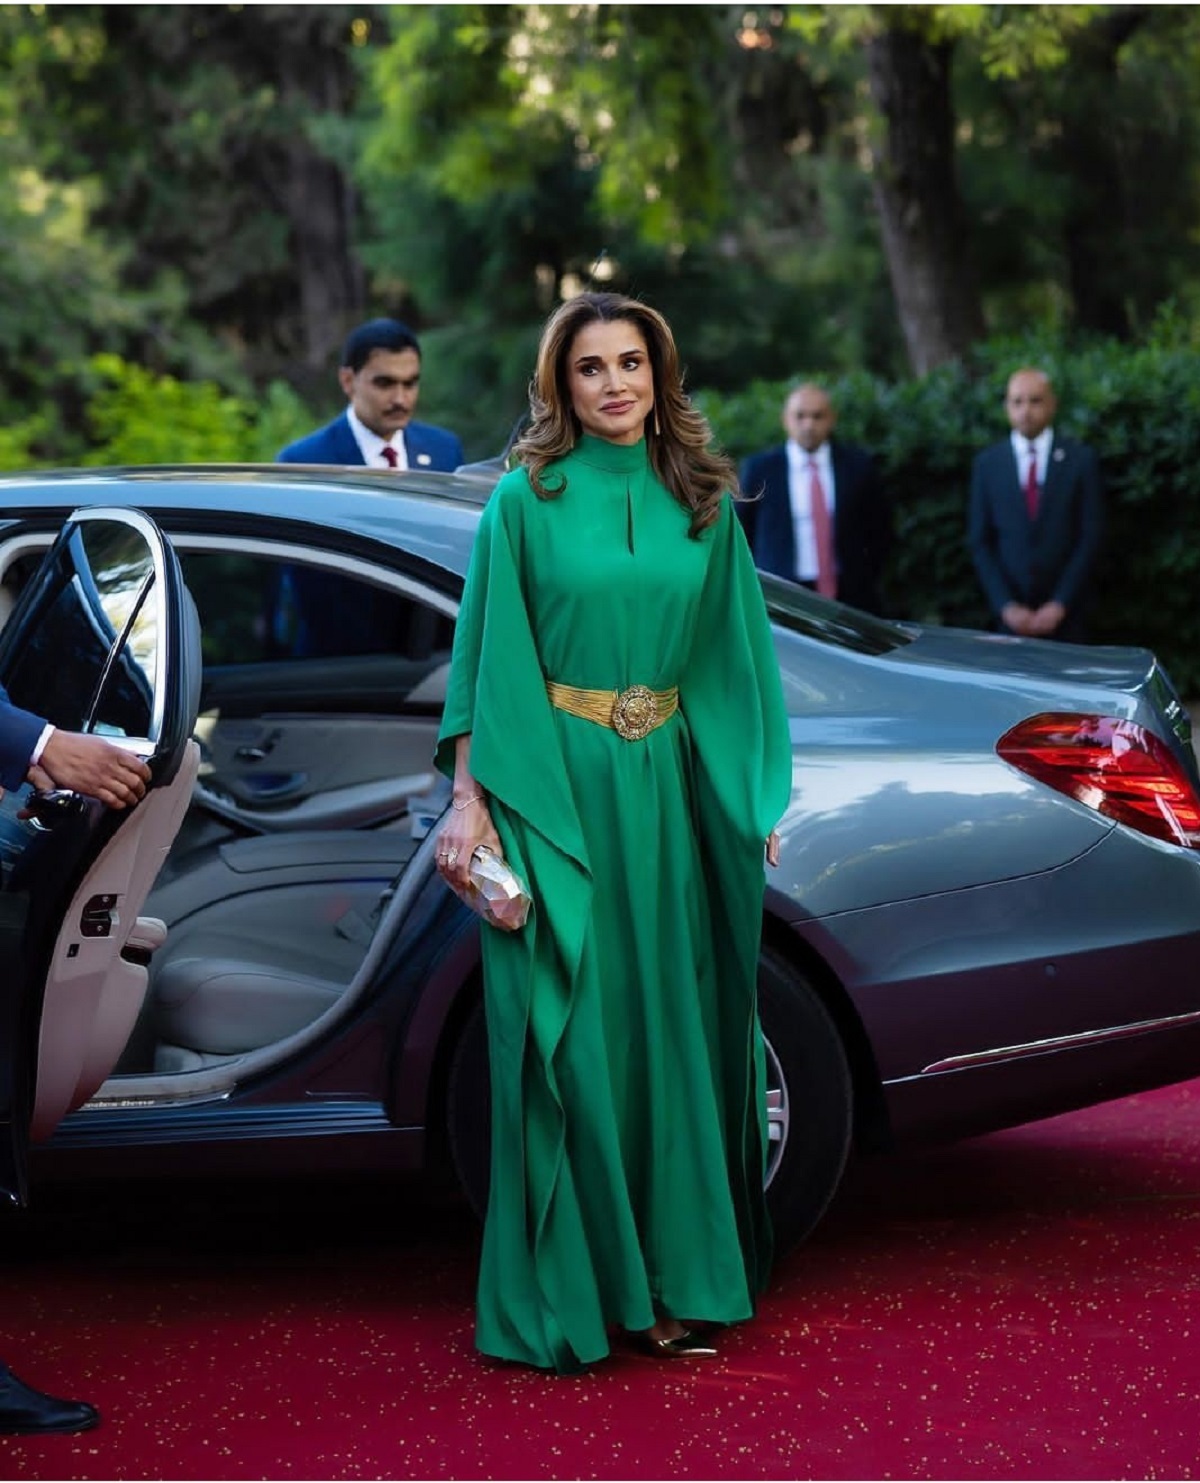 ملکه رانیا، همسر عبدالله دوم پادشاه اردن